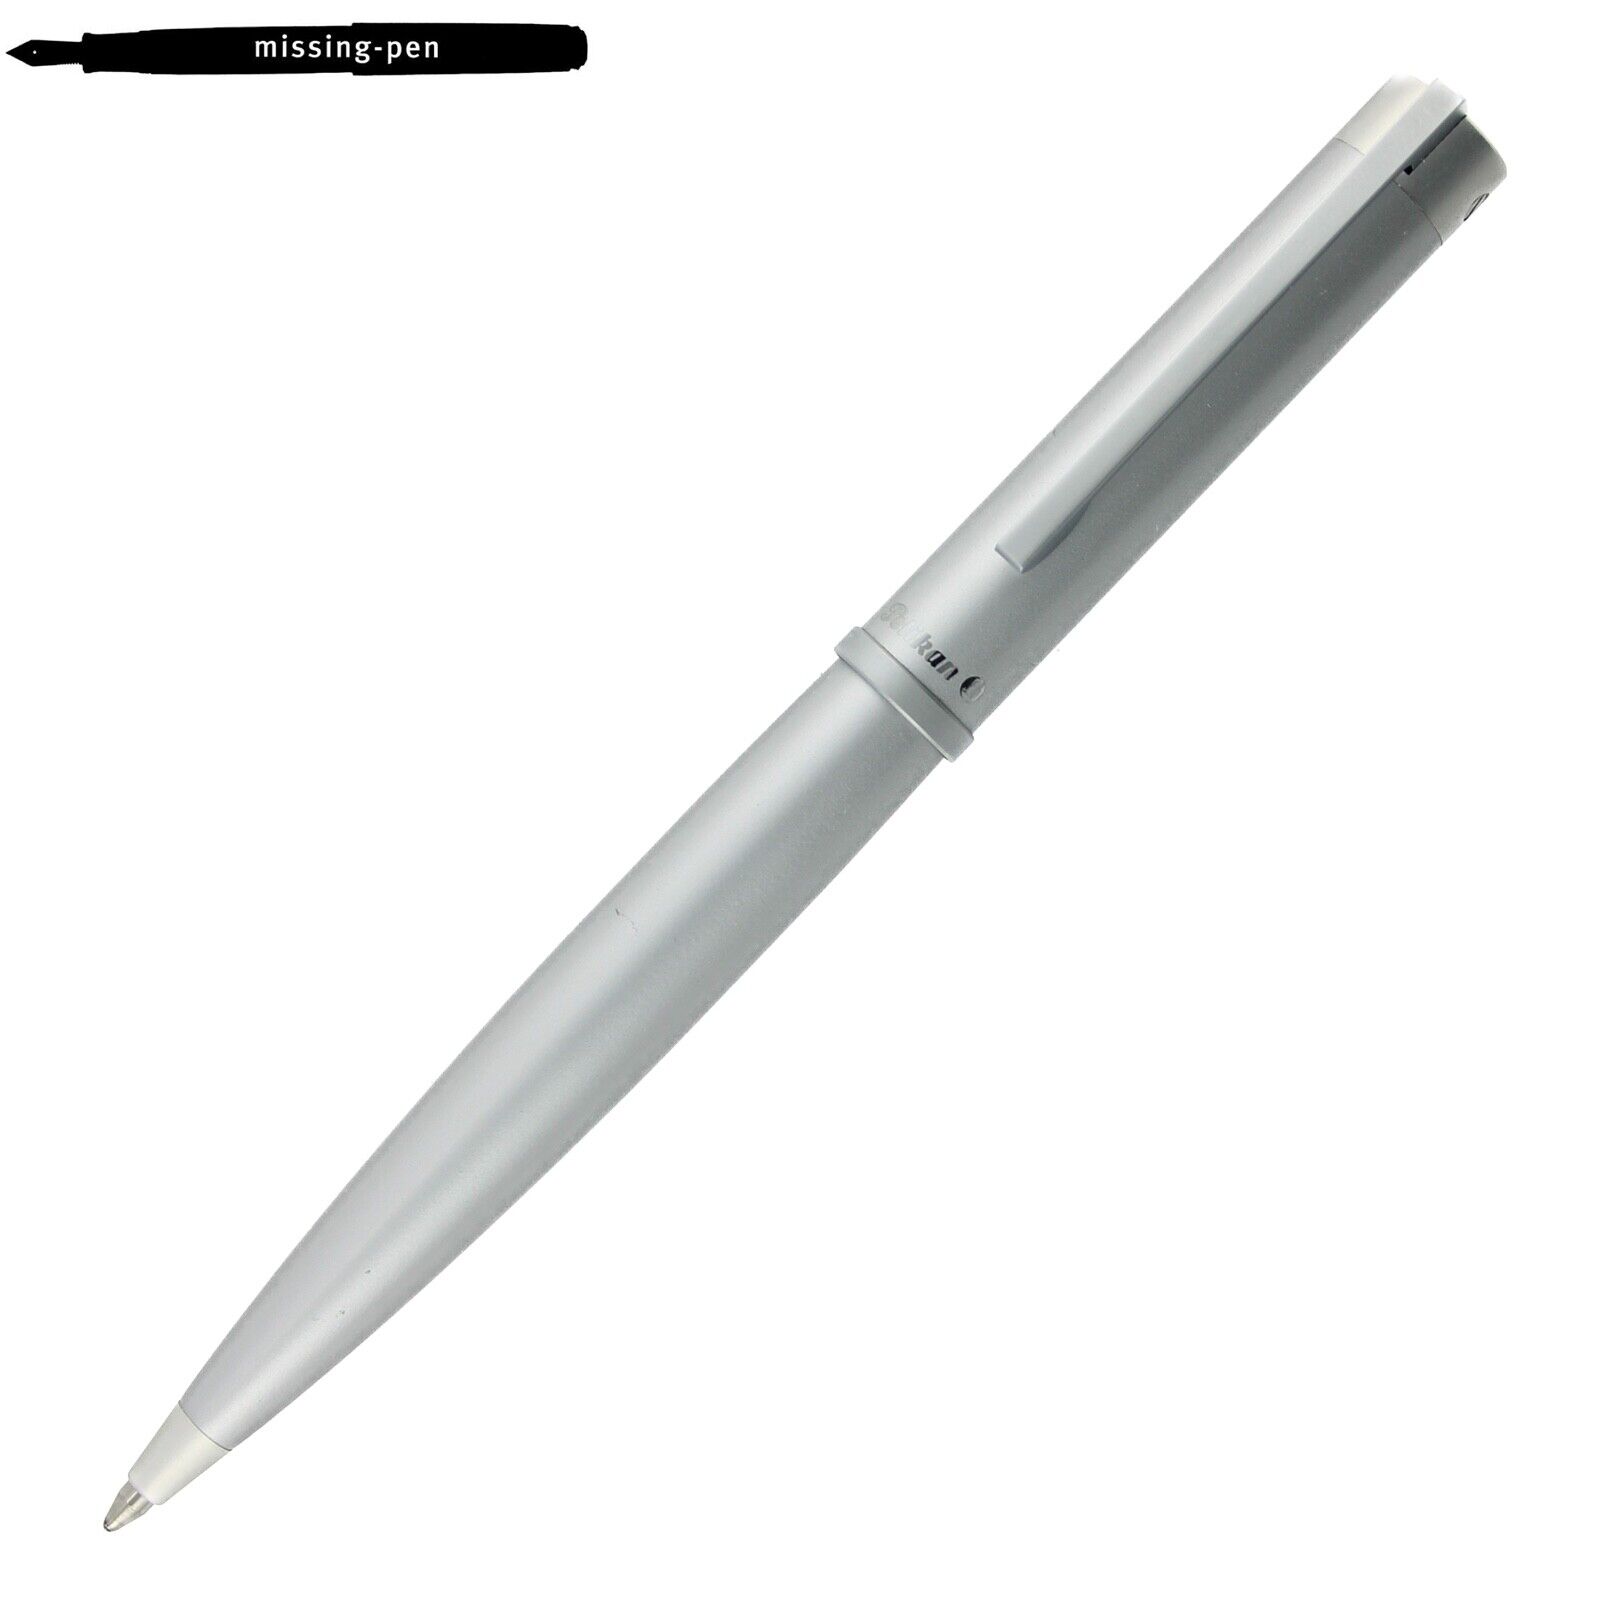 Pelikan K99 Technixx Twist Ballpoint Pen in Stainless Steel Silver (2001 - 2006)